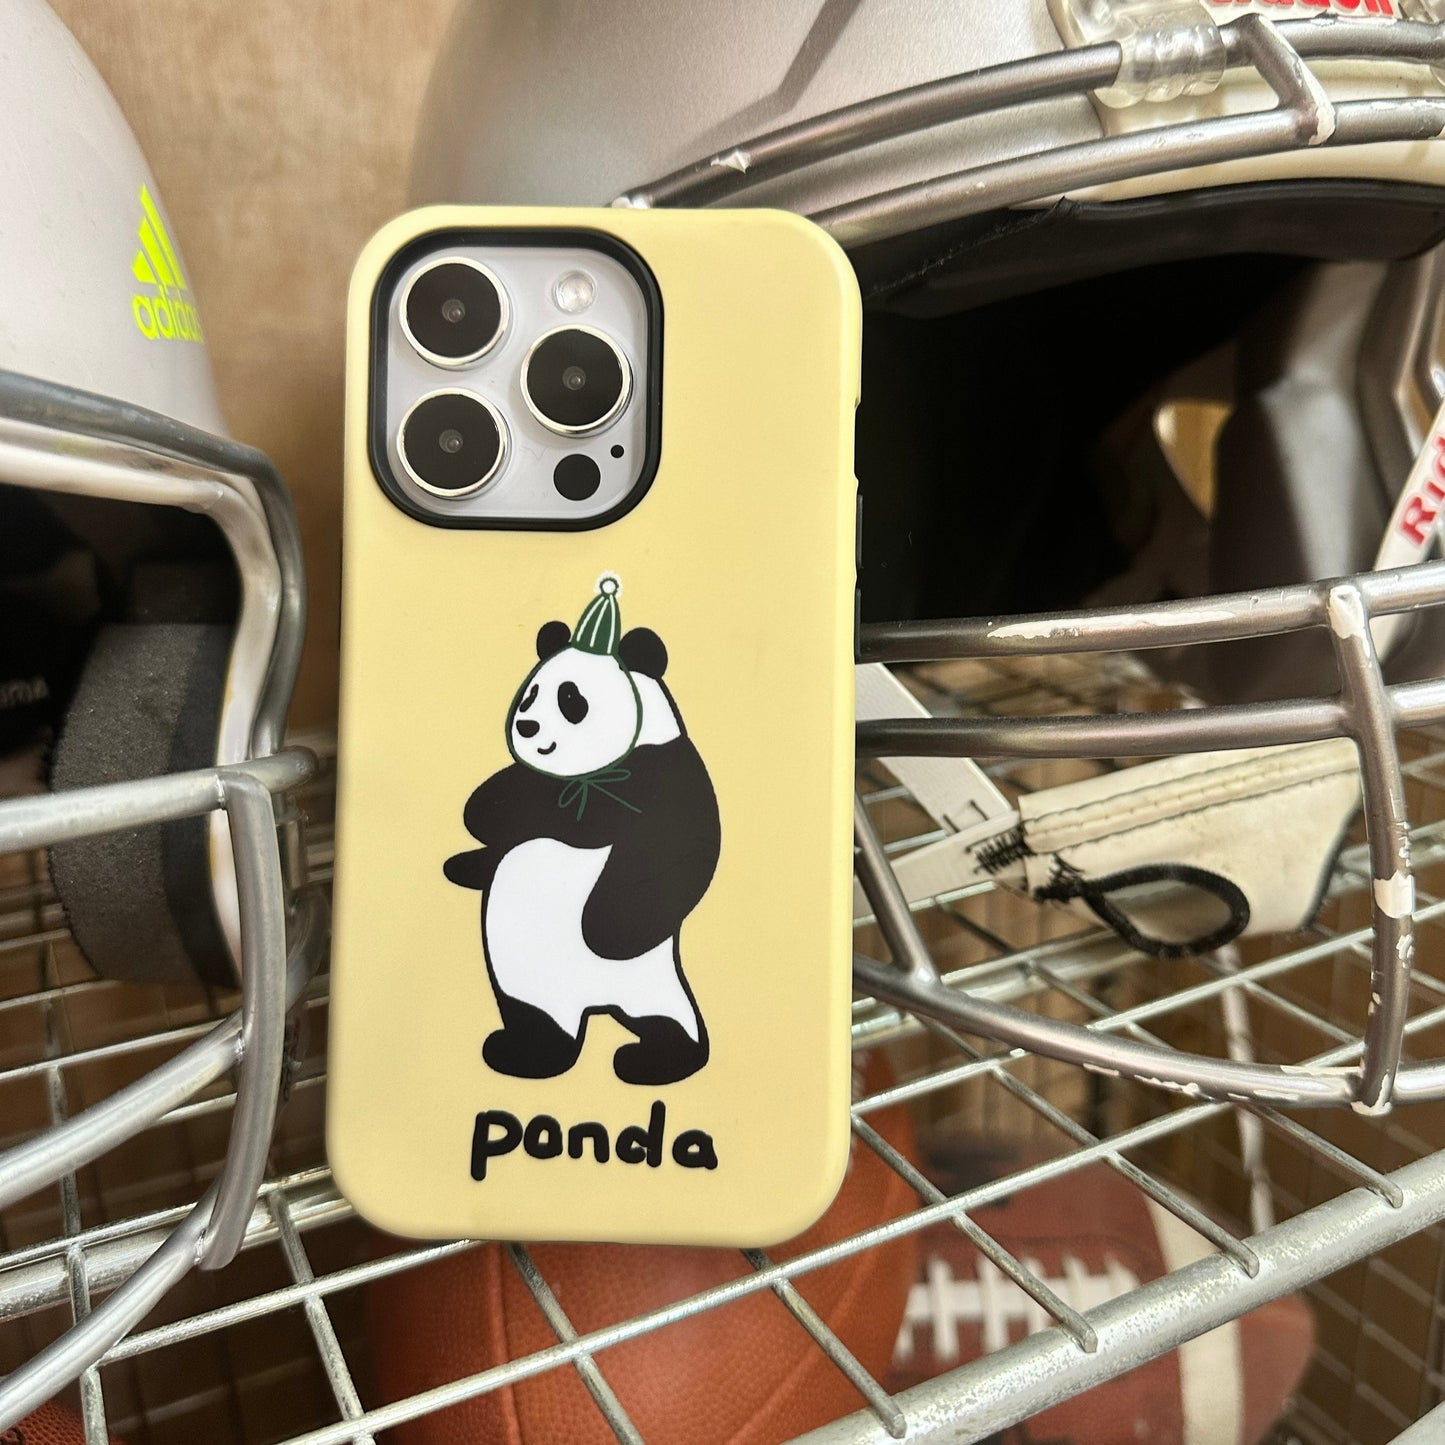 dancing panda iphone case